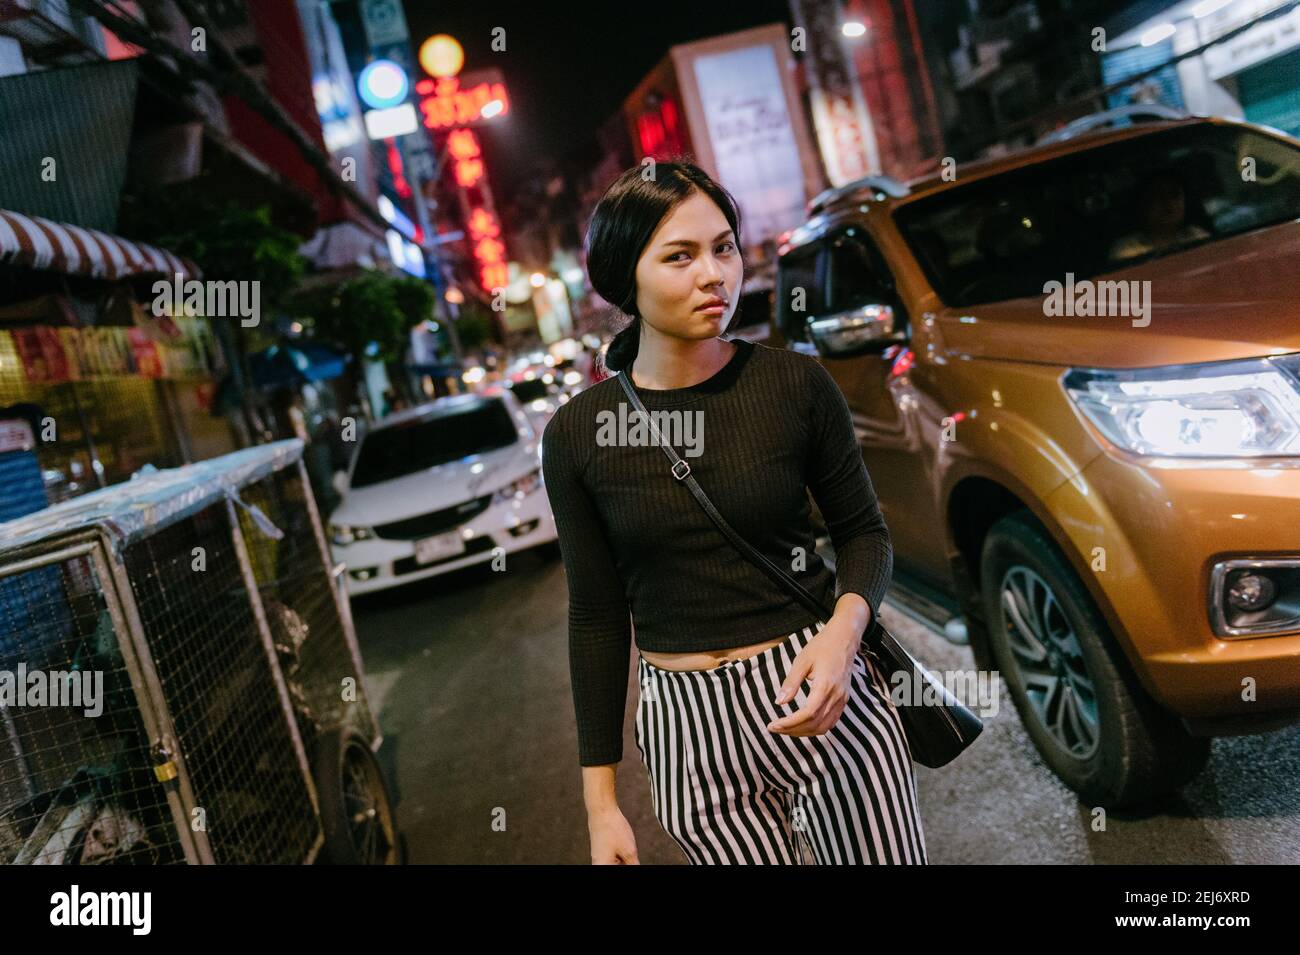 Jeune fille asiatique belle dans une rue animée la nuit, marchant tout en regardant loin de l'appareil photo. Lumières de la ville et voiture en arrière-plan. Banque D'Images